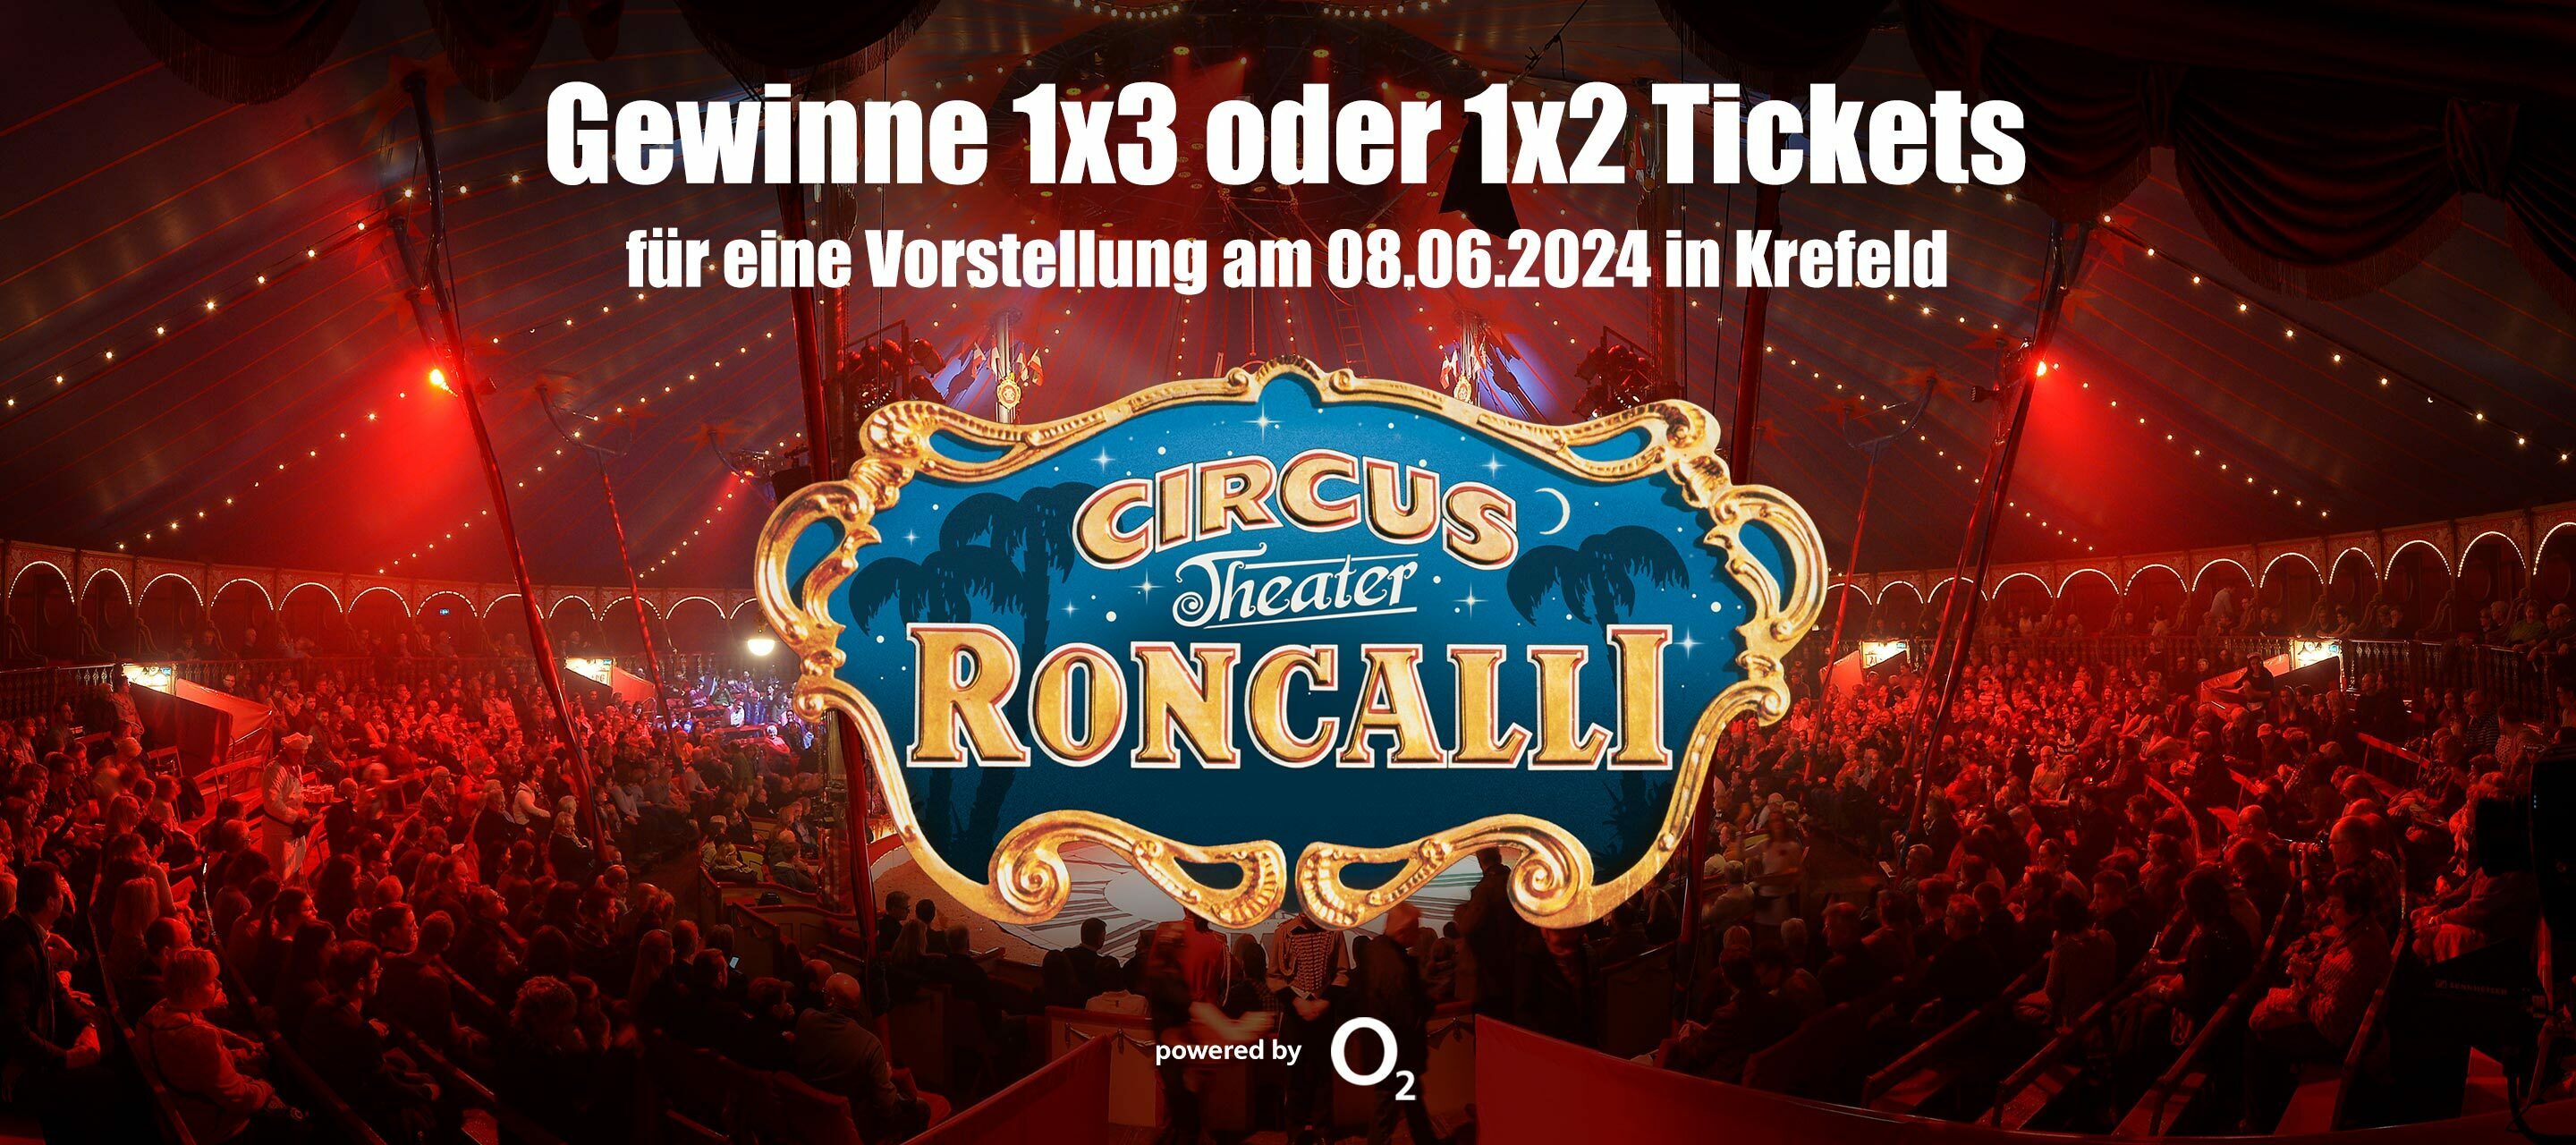 Erlebe Circus Roncalli live in Krefeld - O₂ Community Gewinnspiel